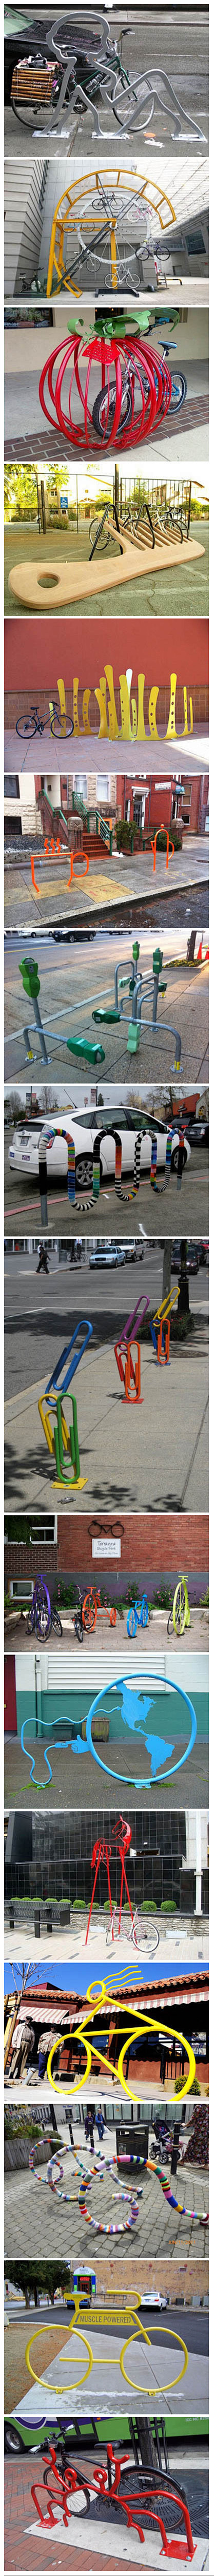 【经典街头创意】街头那些富有创意的自行车...